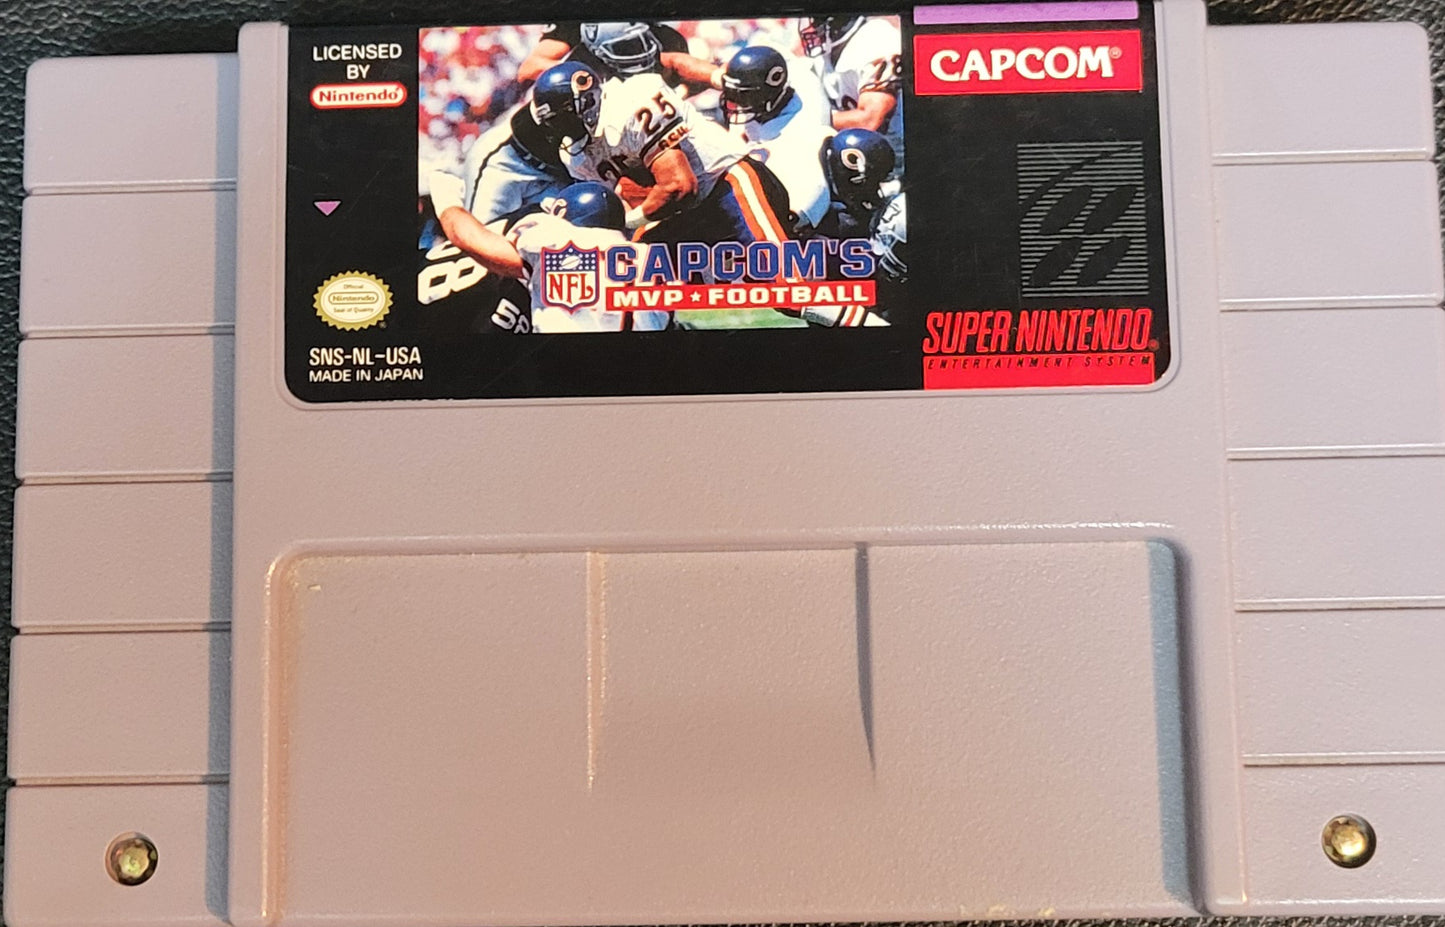 Authentic Capcom's MVP Football SNES - Super Nintendo Entertainment System Classic Arcade Game Great Original Condition Plus Plastic Protector